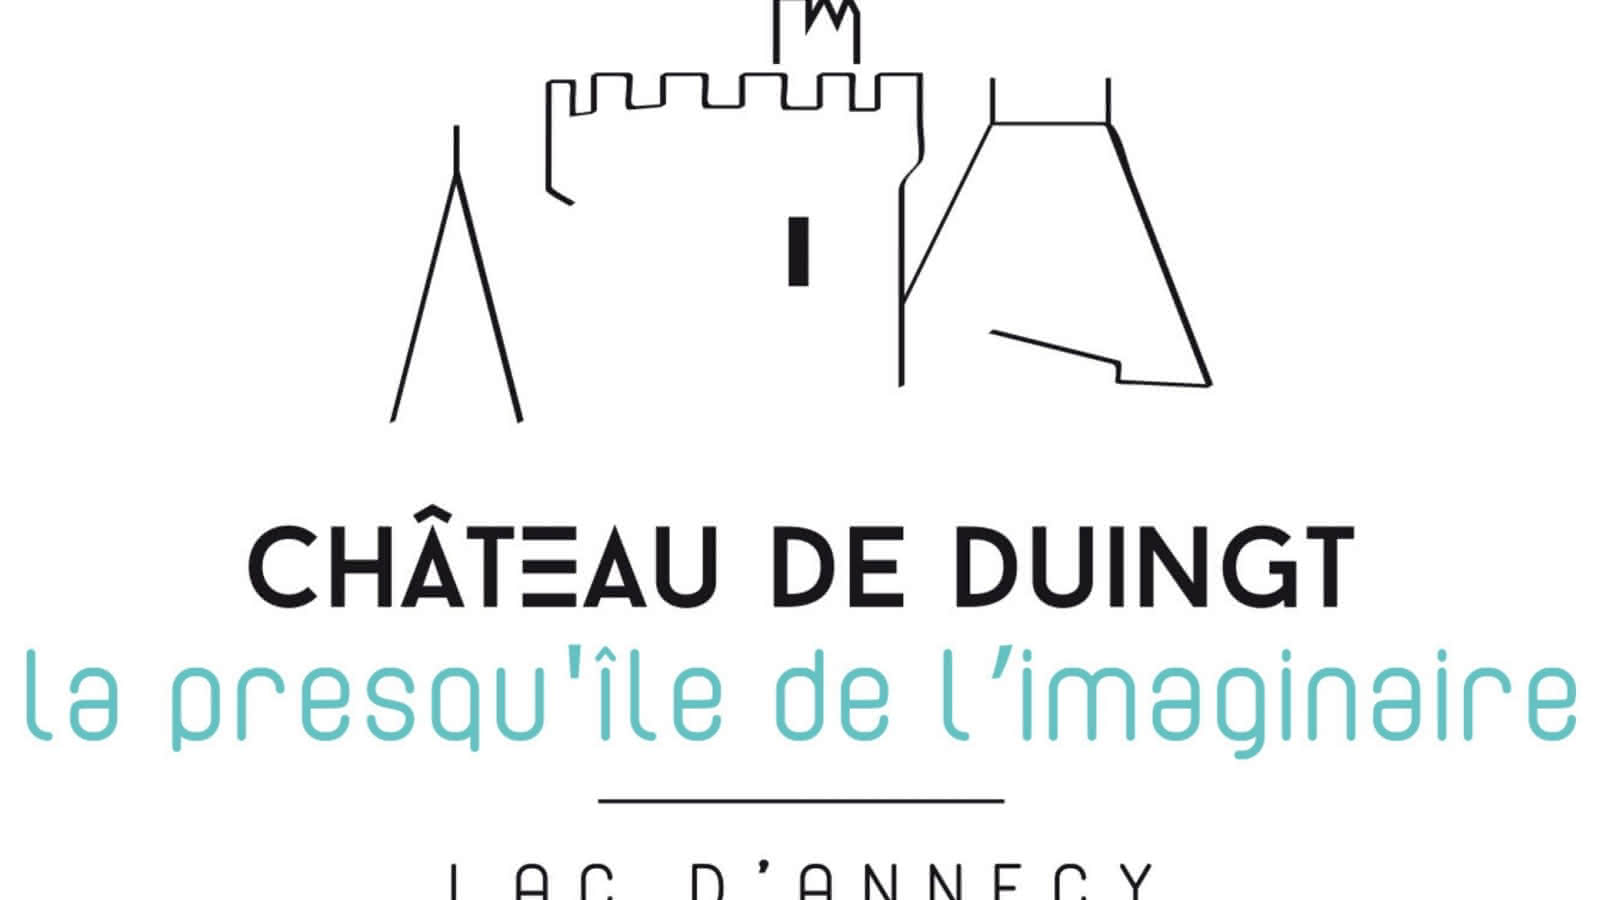 Logo Château de Duingt Presqu'île de l'Imaginaire